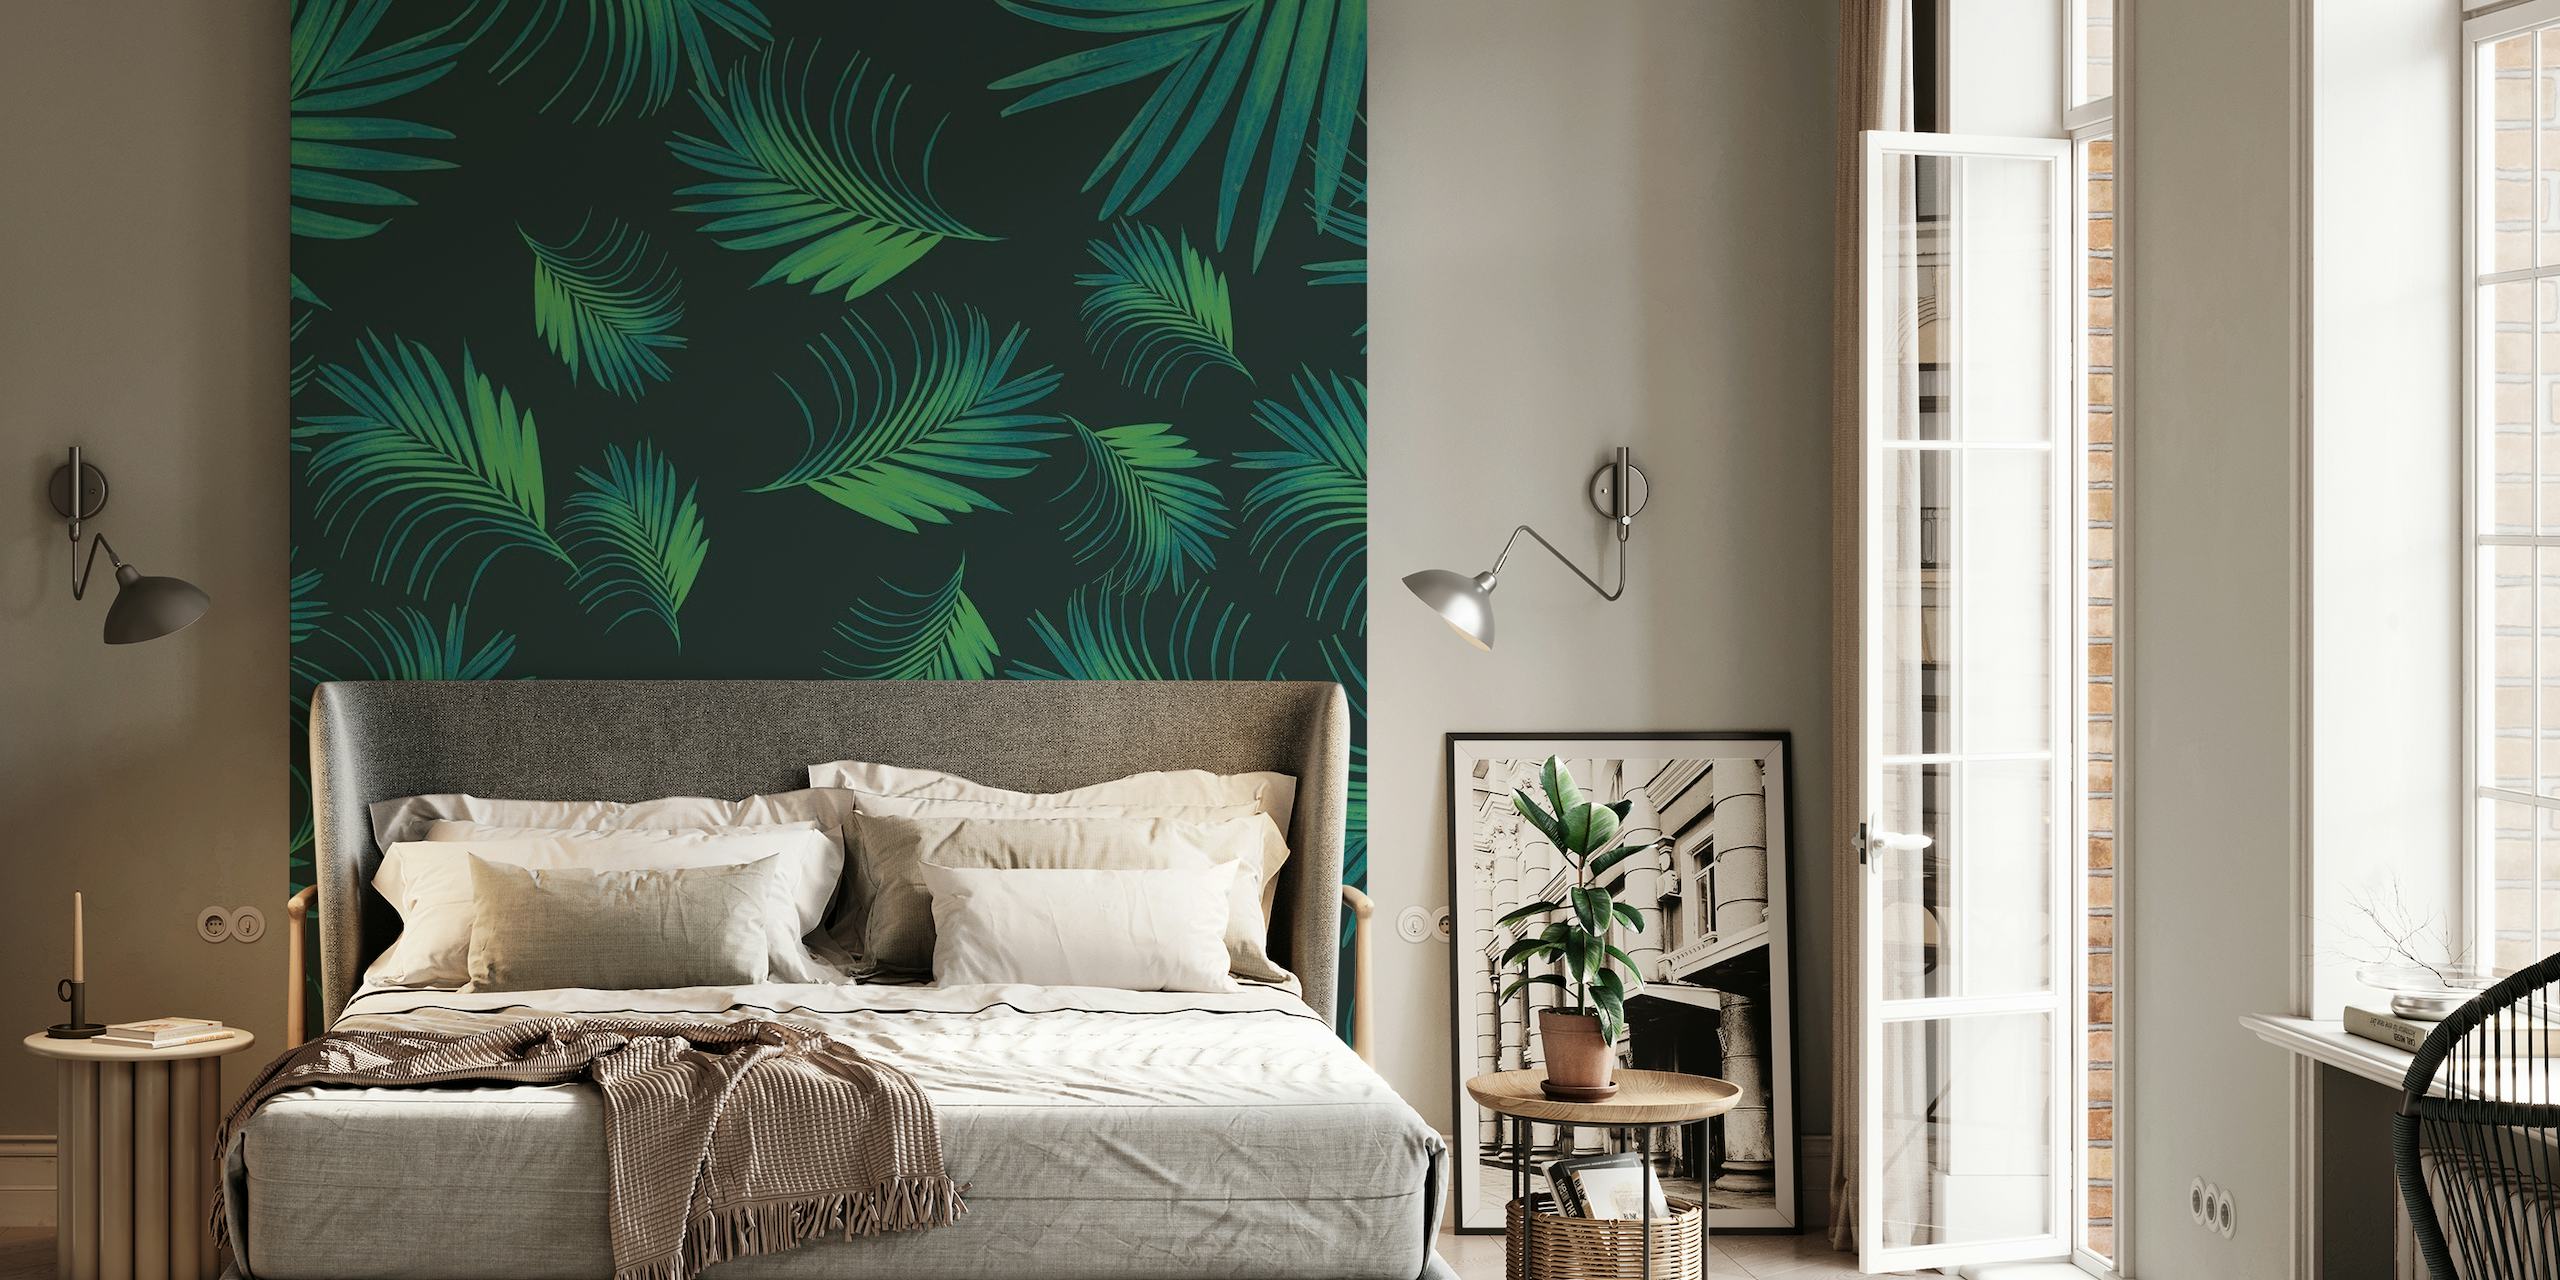 Tropical Night Palms Pattern Väggdekor med grönskande blad på en mörk bakgrund